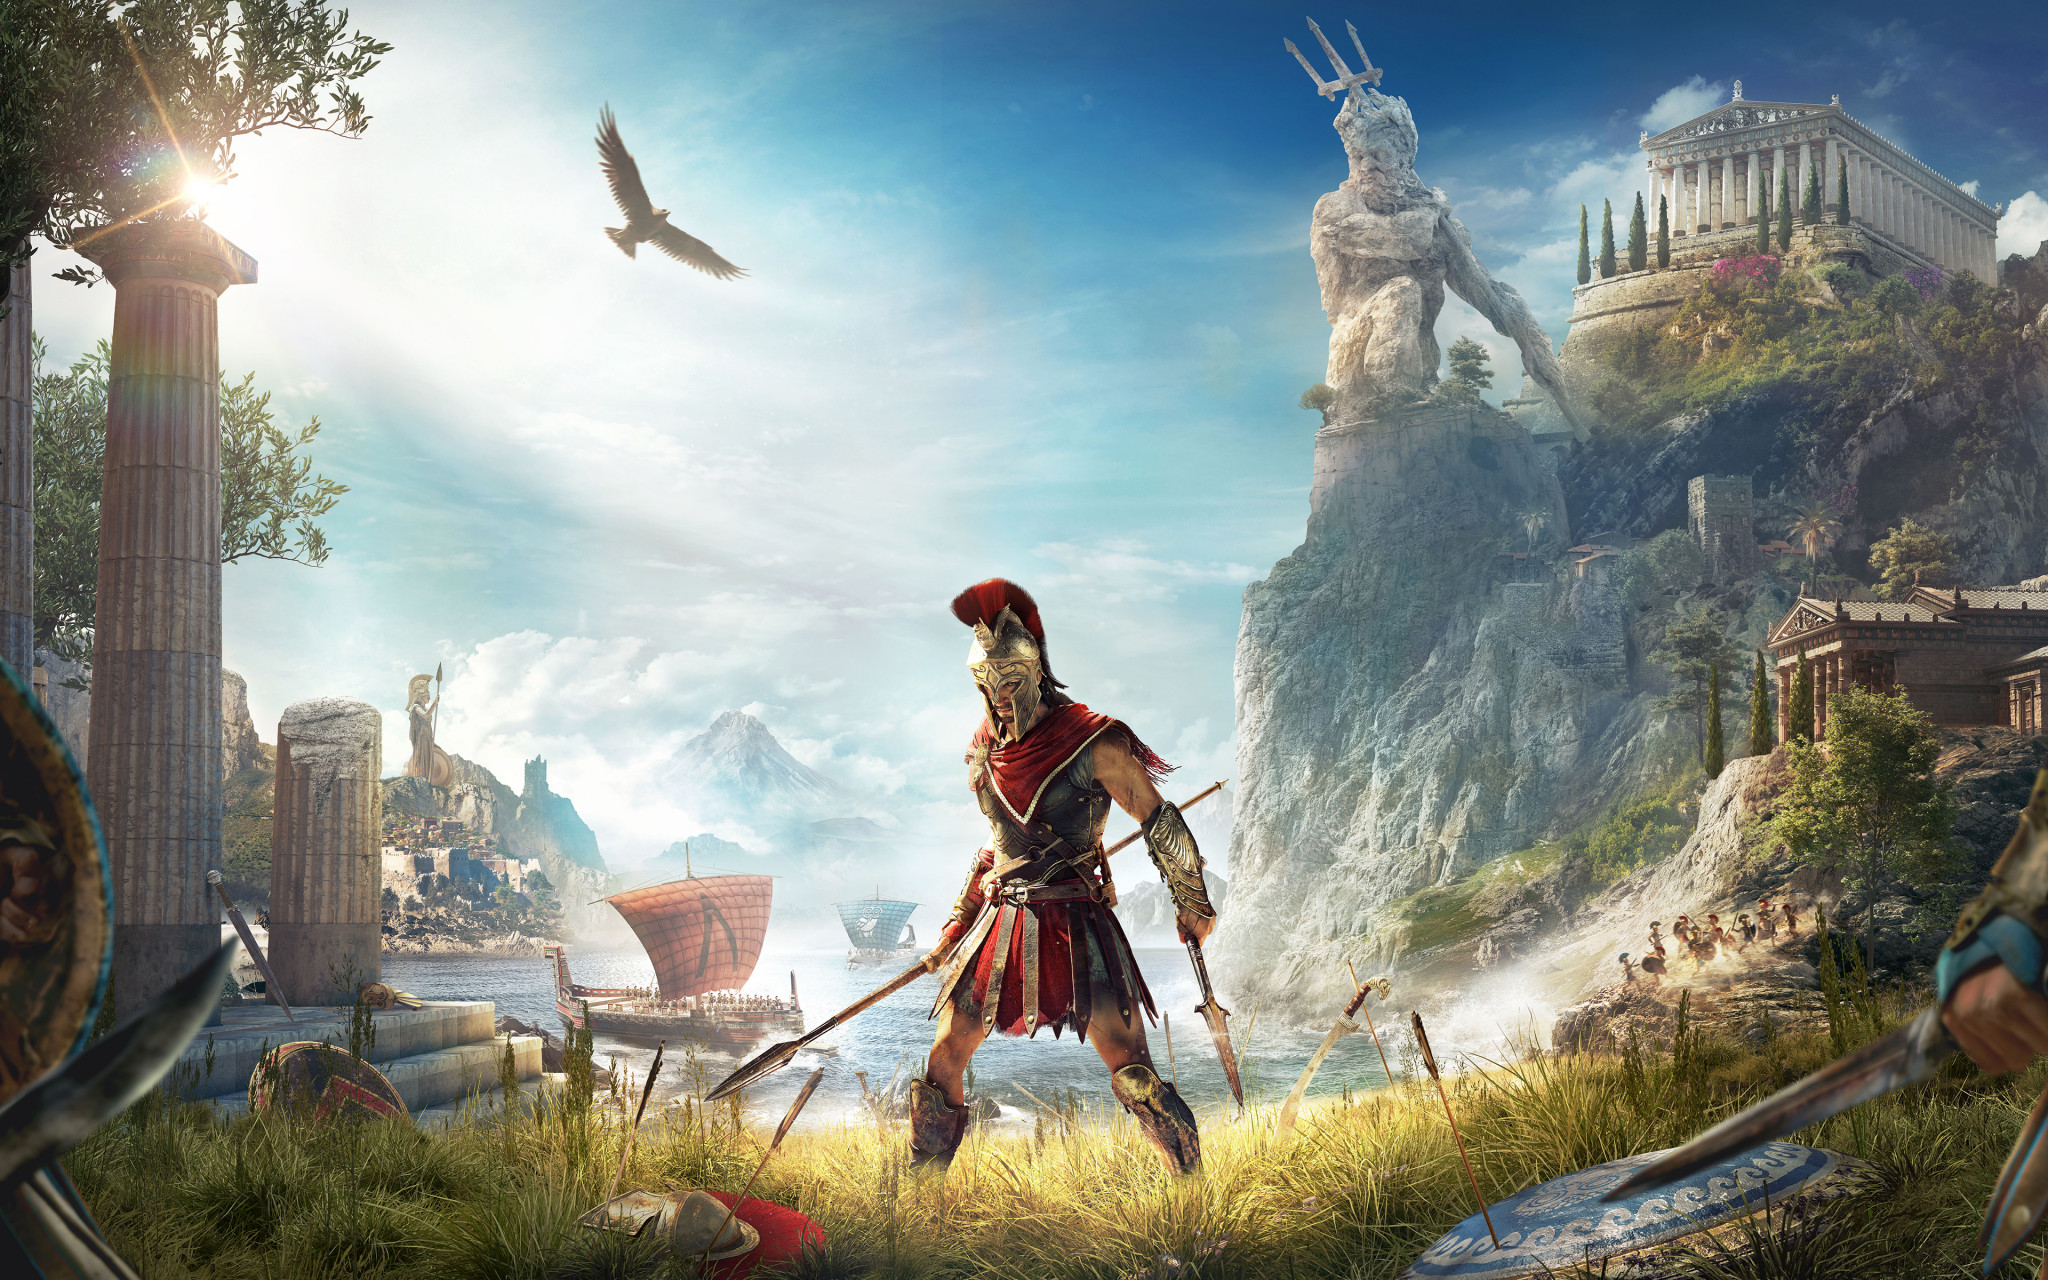 Δείτε video από το Assassin’s Creed Odyssey που μας ταξιδεύει στην Αρχαία Ελλάδα